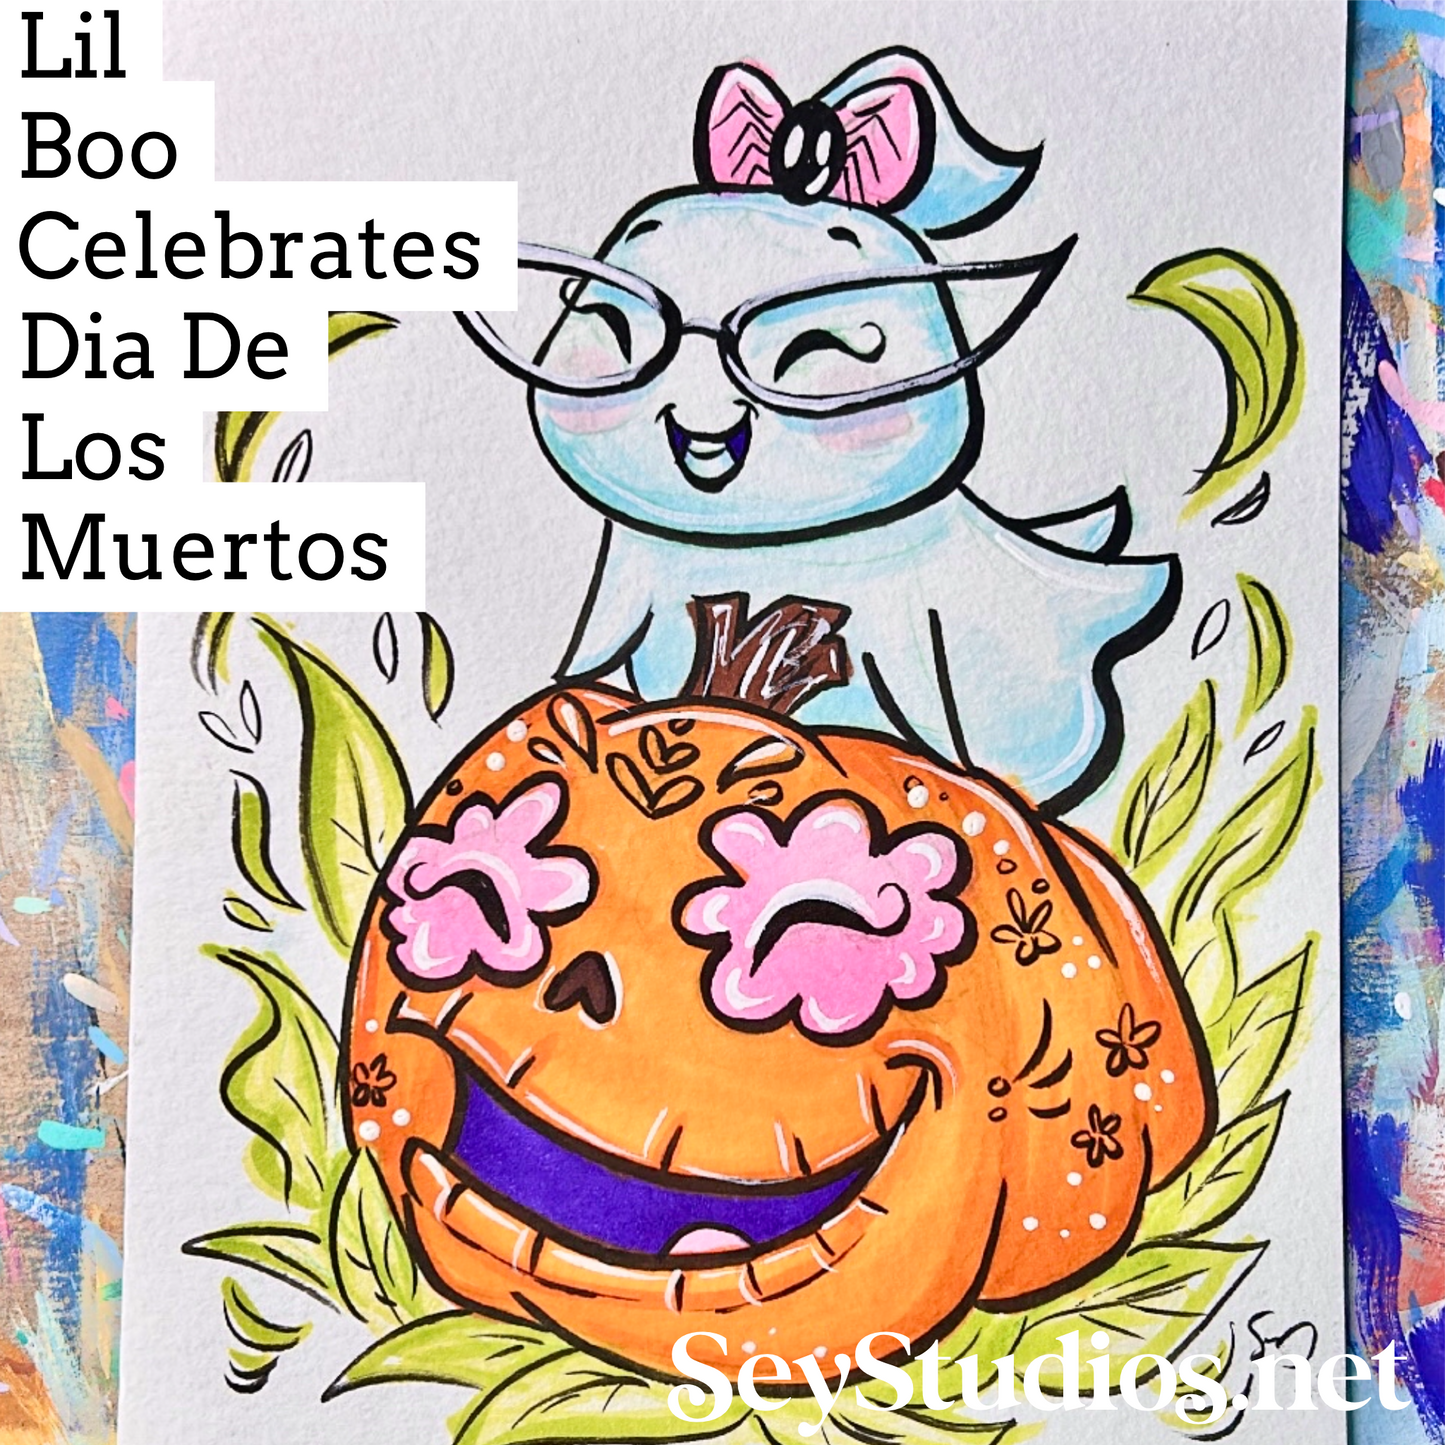 Original - “Lil Boo Celebrates Dia De Los Muertos” Sketch